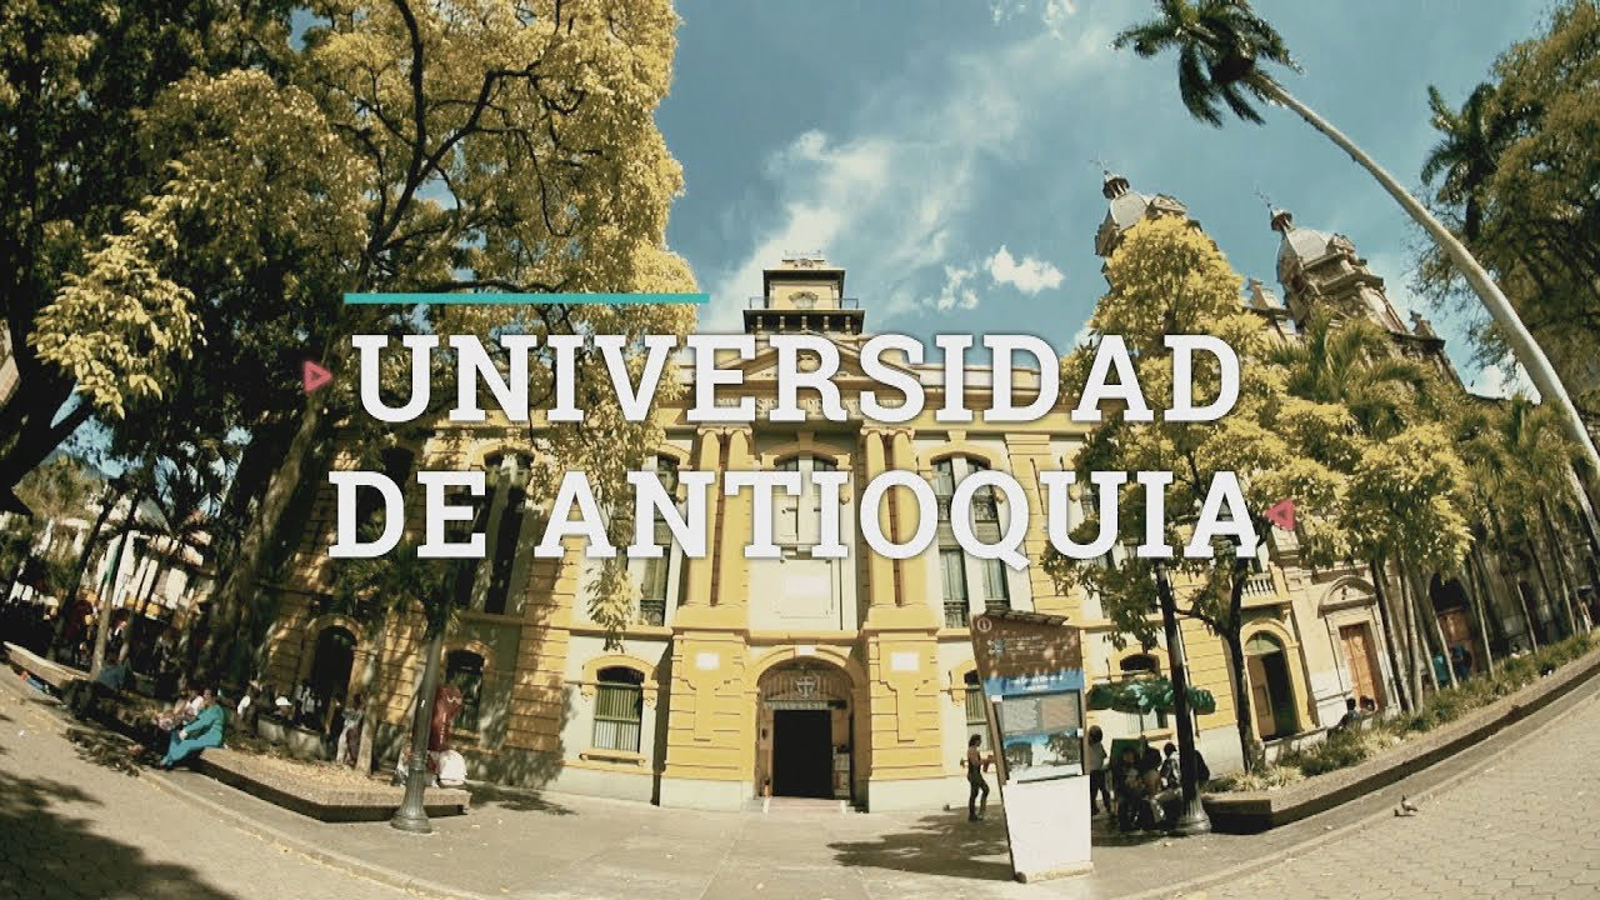 Convocatoria profesoral de la Universidad de Antoquia abierta hasta el 11 de diciembre de 2019.